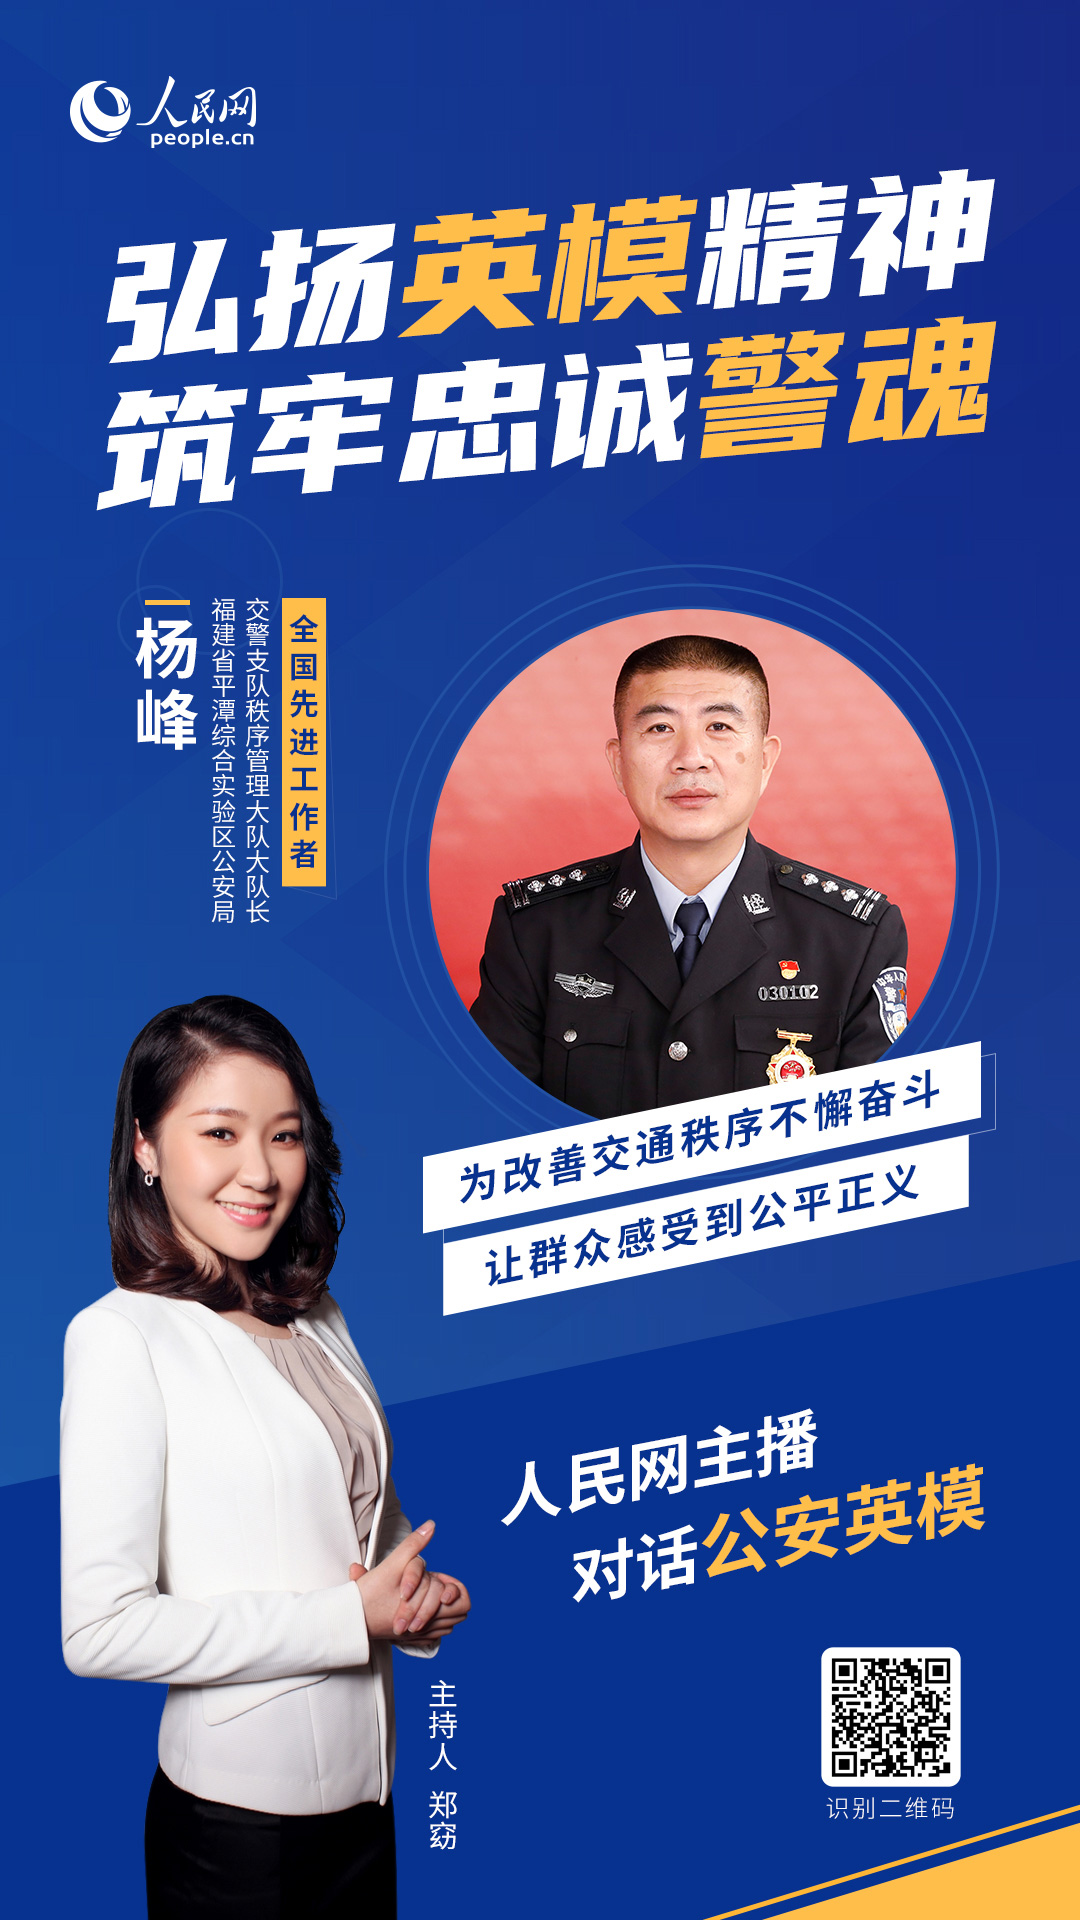 平潭綜合實驗區公安局交警支隊秩序管理大隊大隊長 楊峰